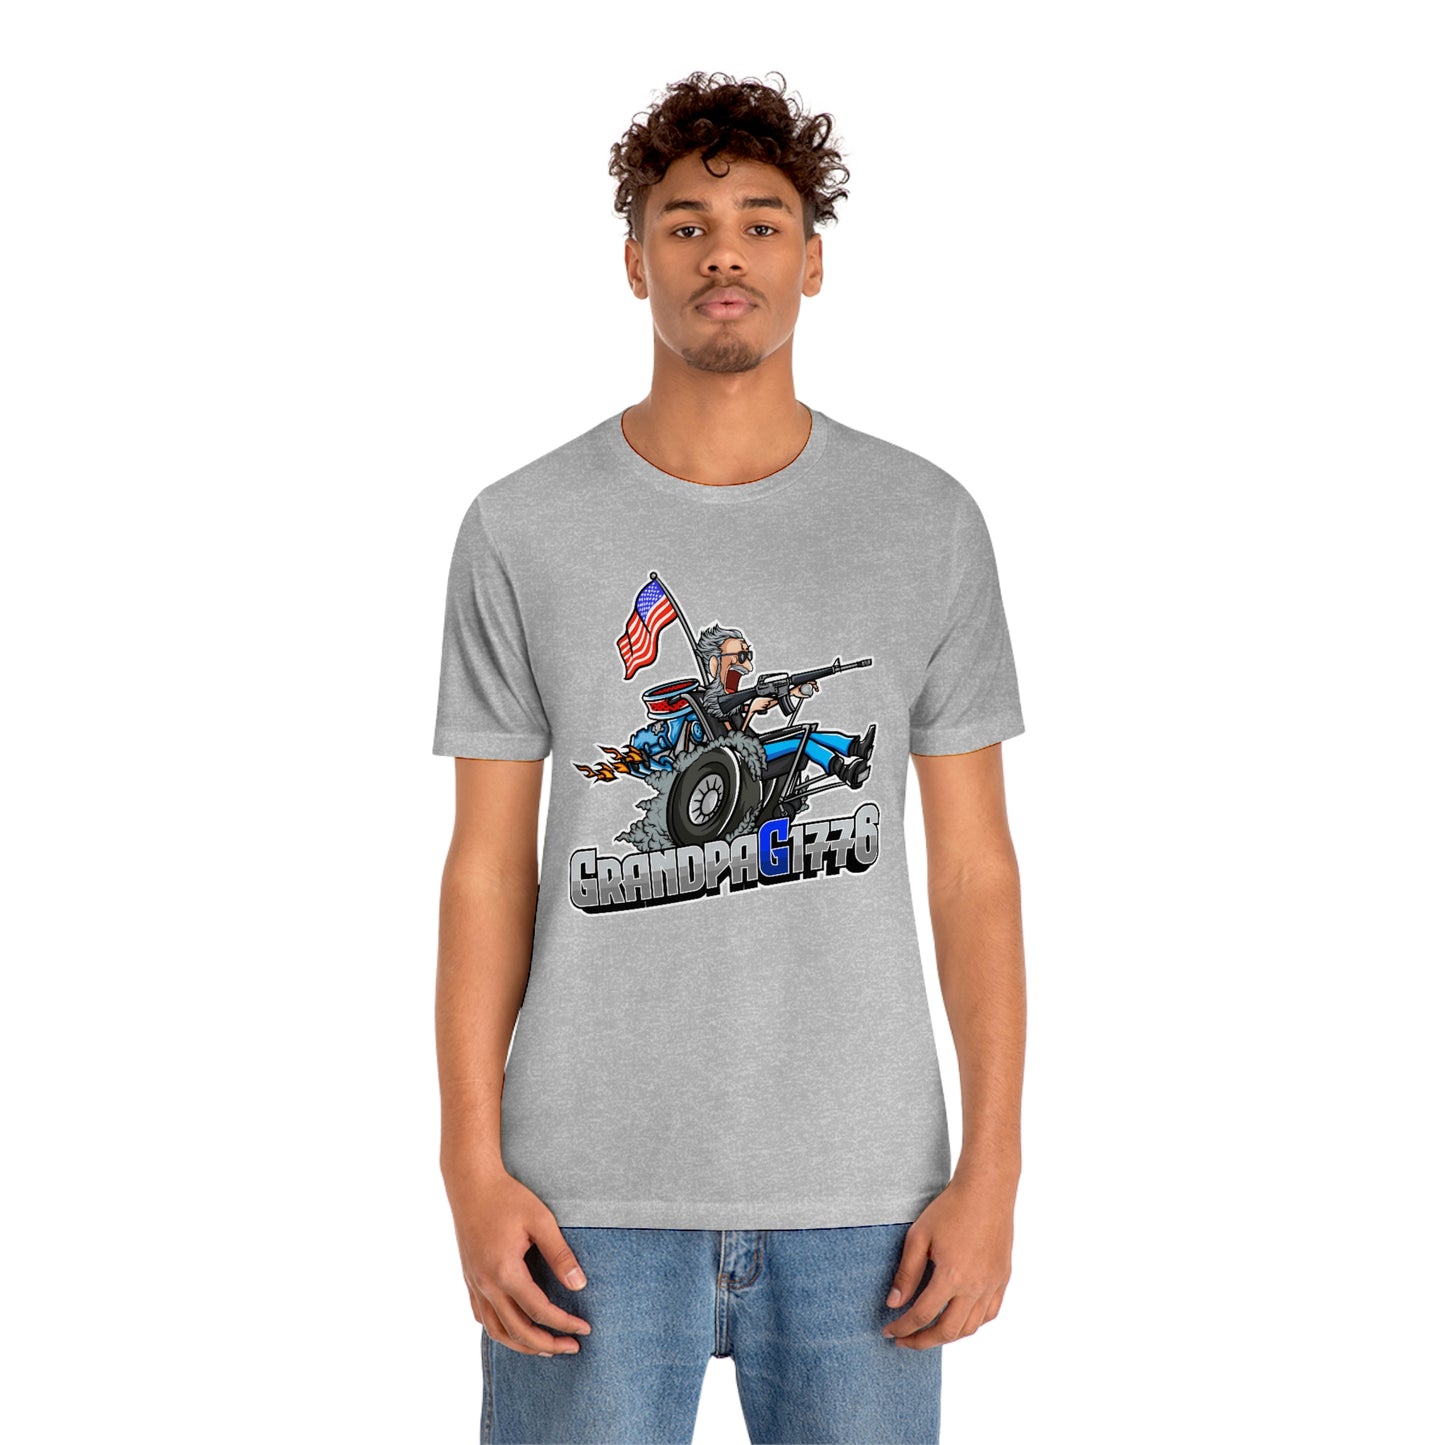 GrandpaG Unisex T-shirt